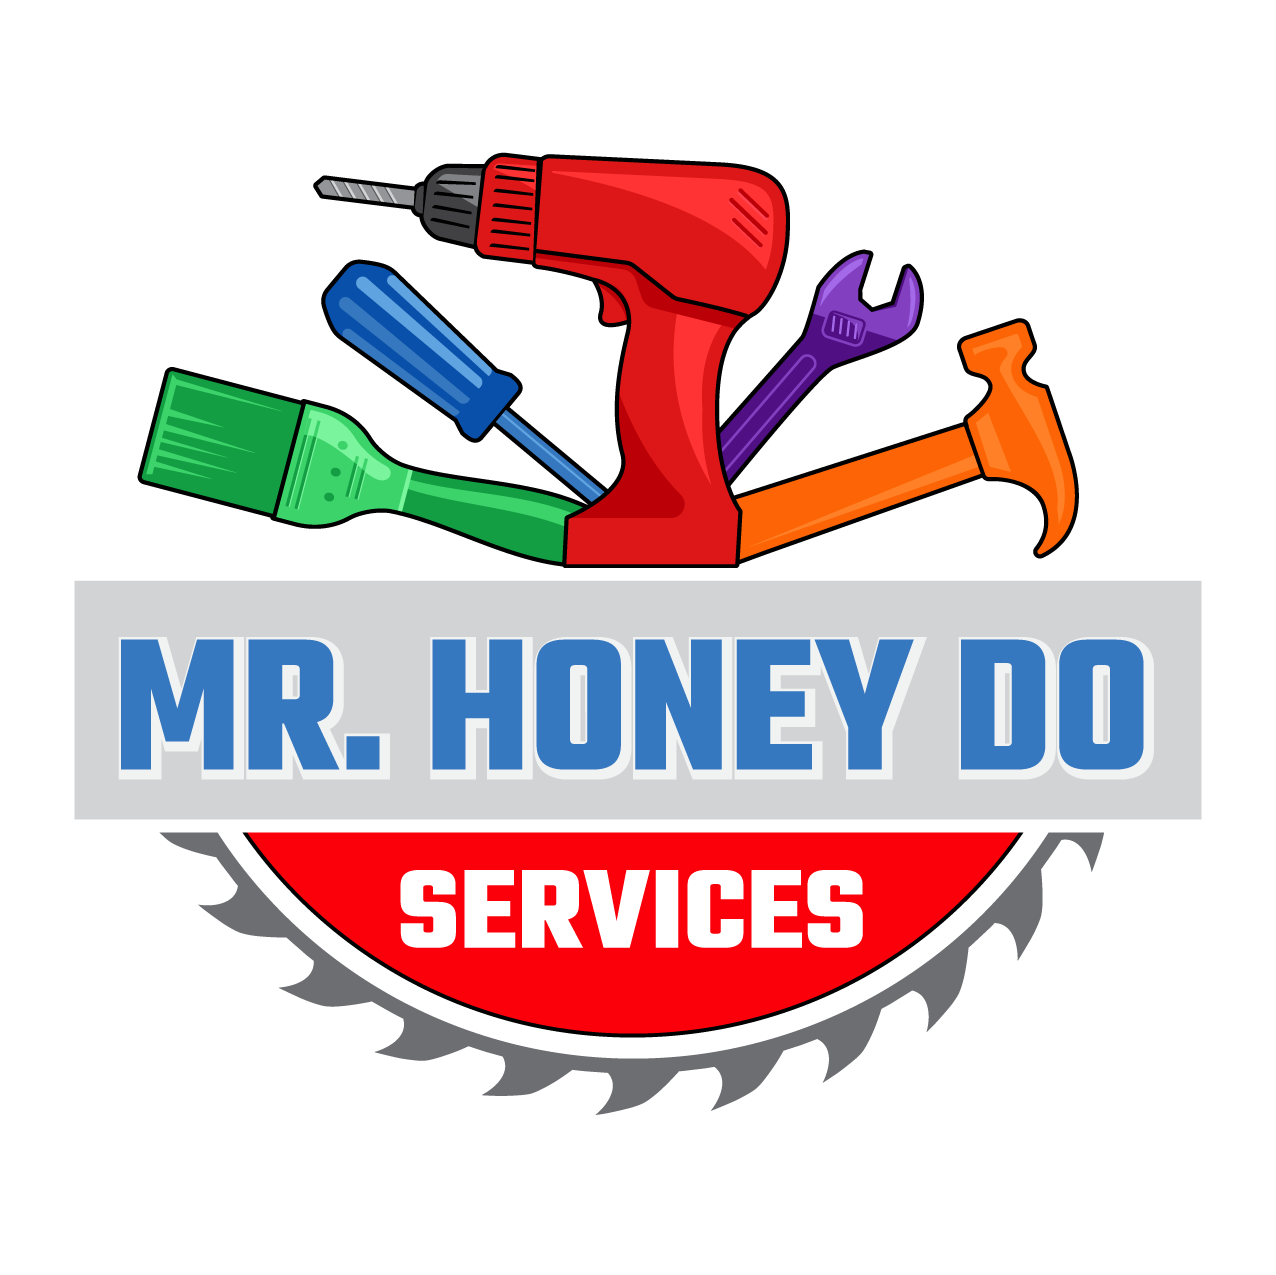 Mr. Honey Do